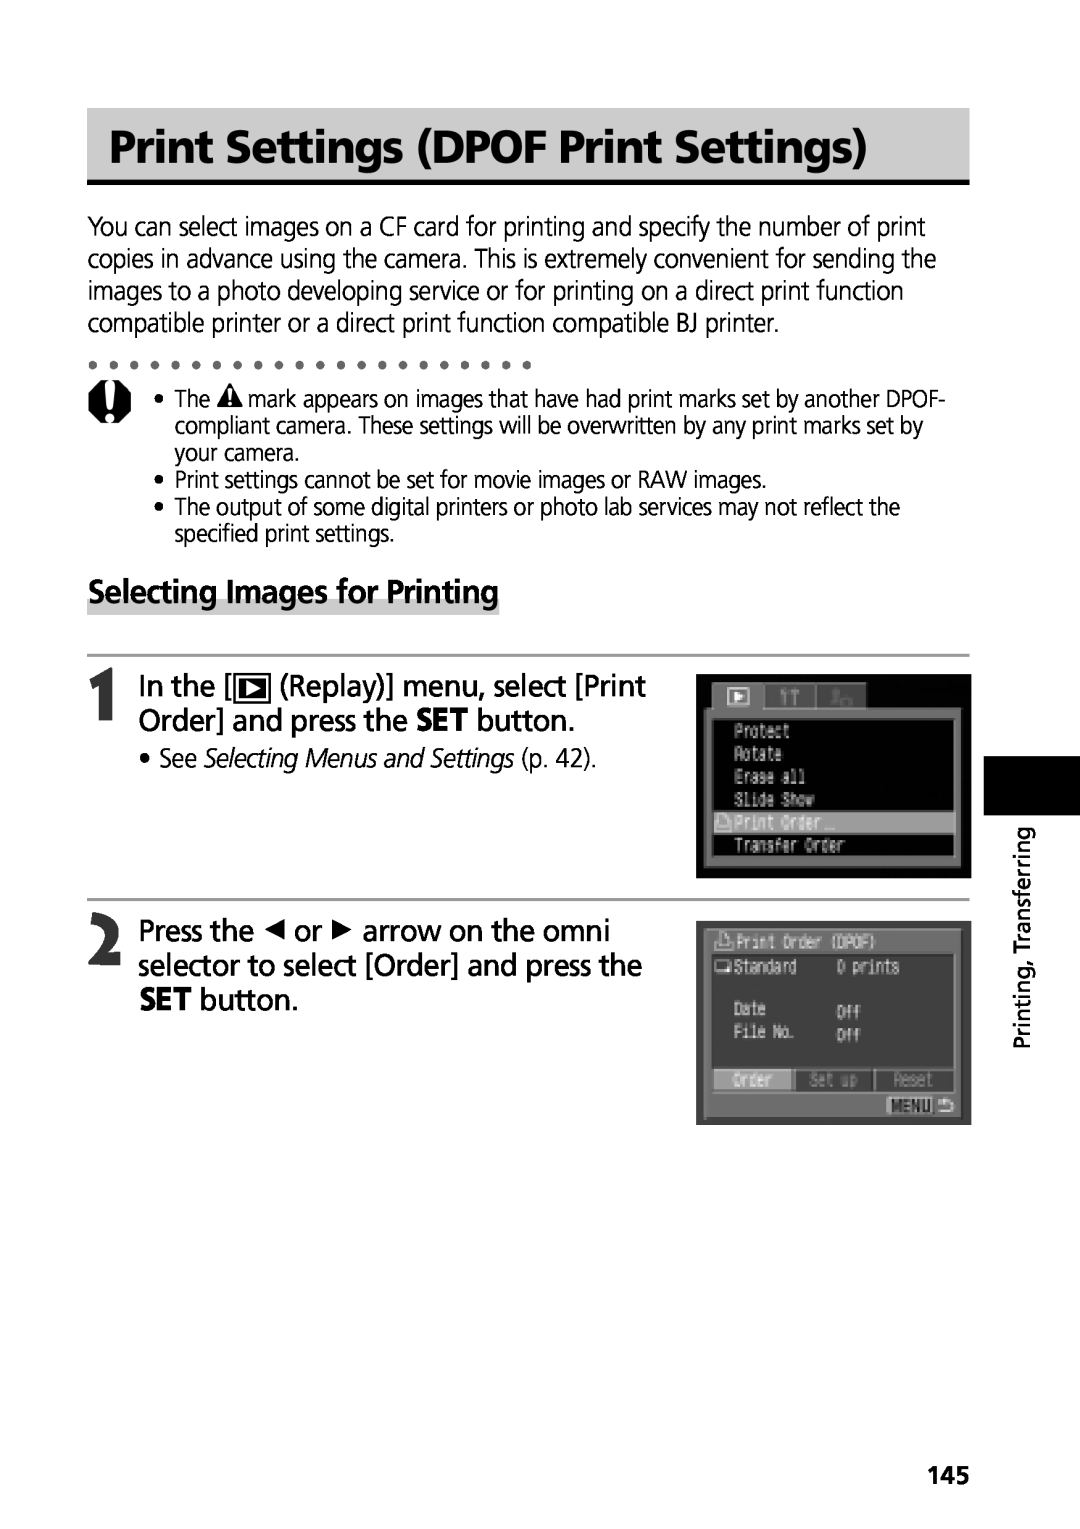 Canon G3 manual Print Settings DPOF Print Settings, Selecting Images for Printing, See Selecting Menus and Settings p 